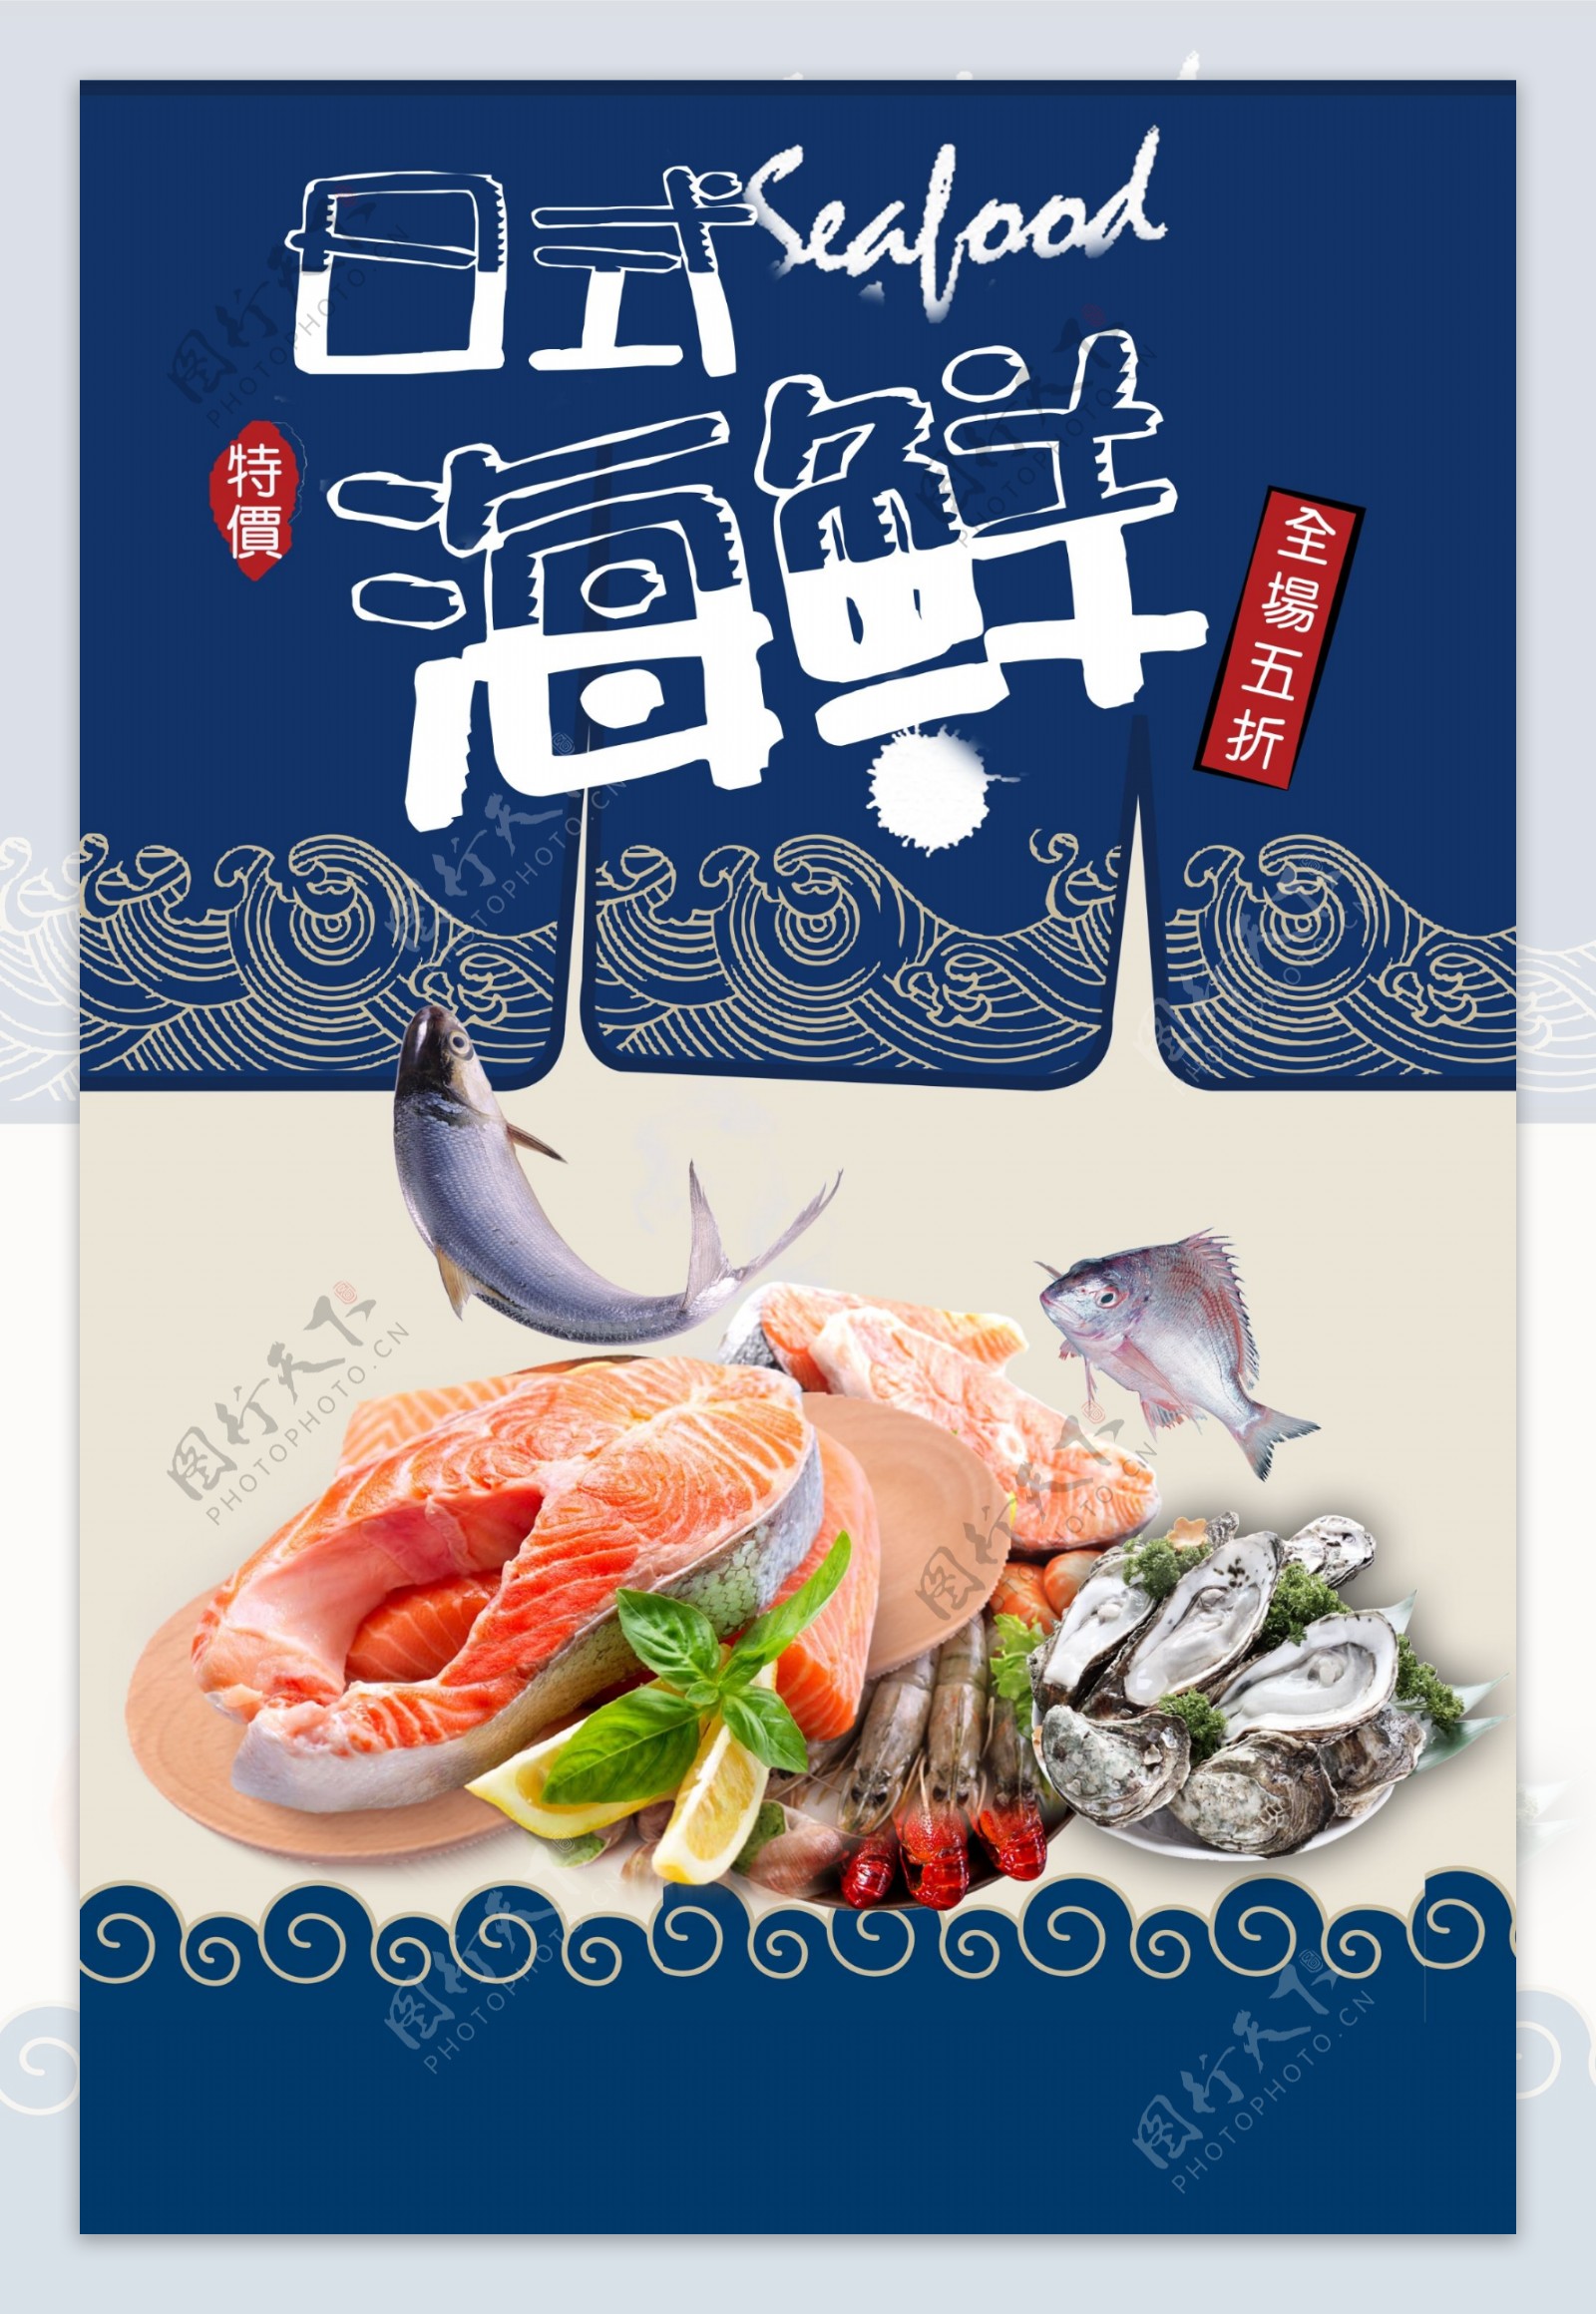 海鲜美食食材促销活动海报素材